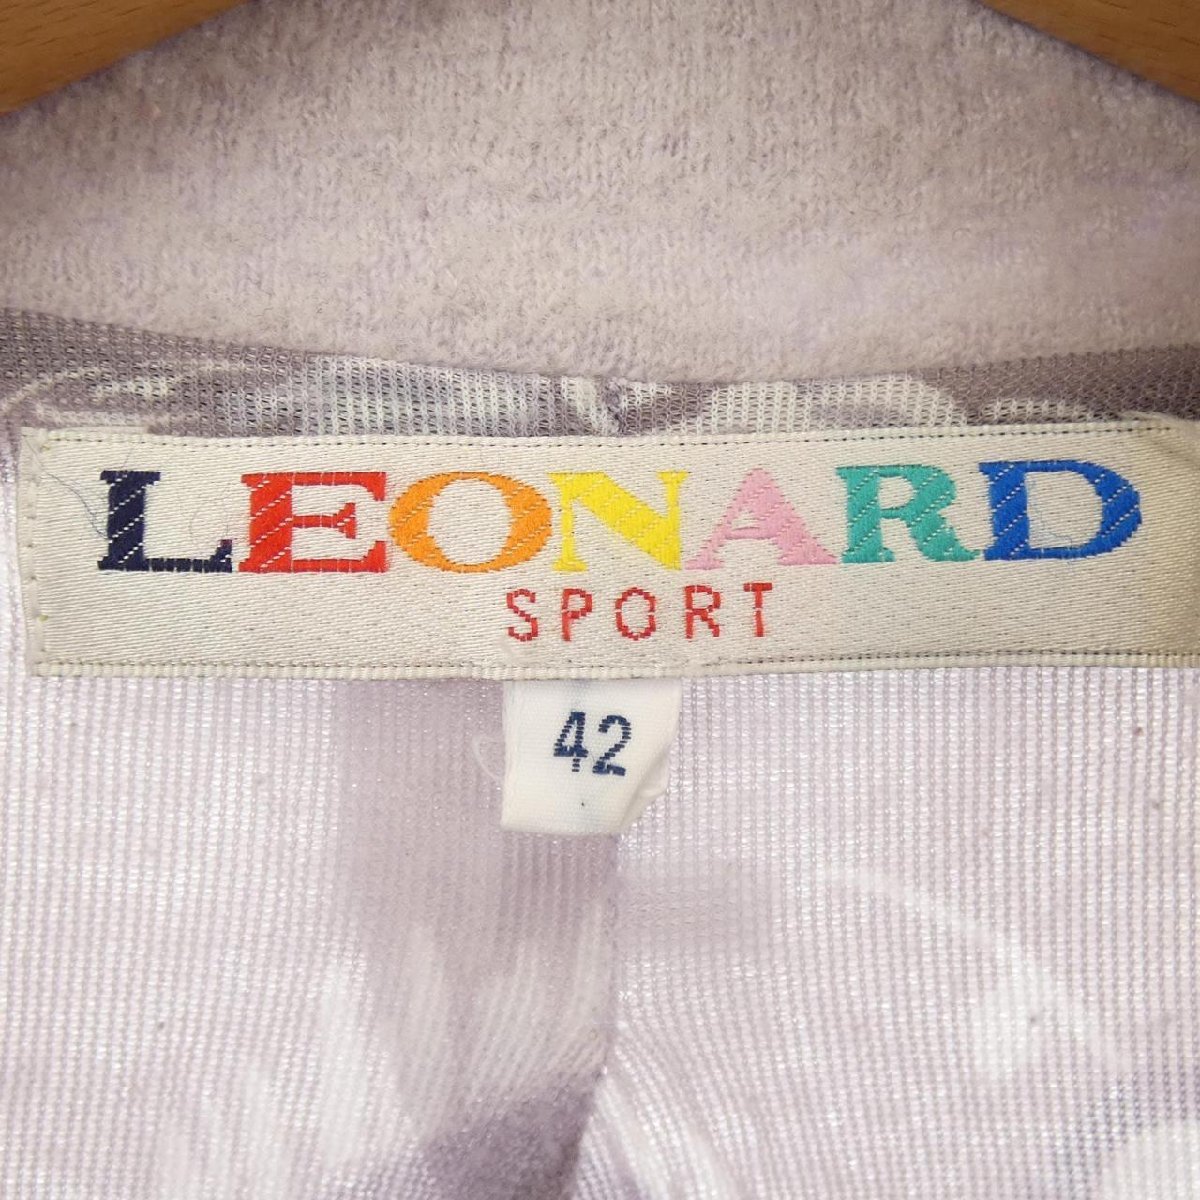 レオナールスポーツ LEONARD SPORT ブルゾン_画像4